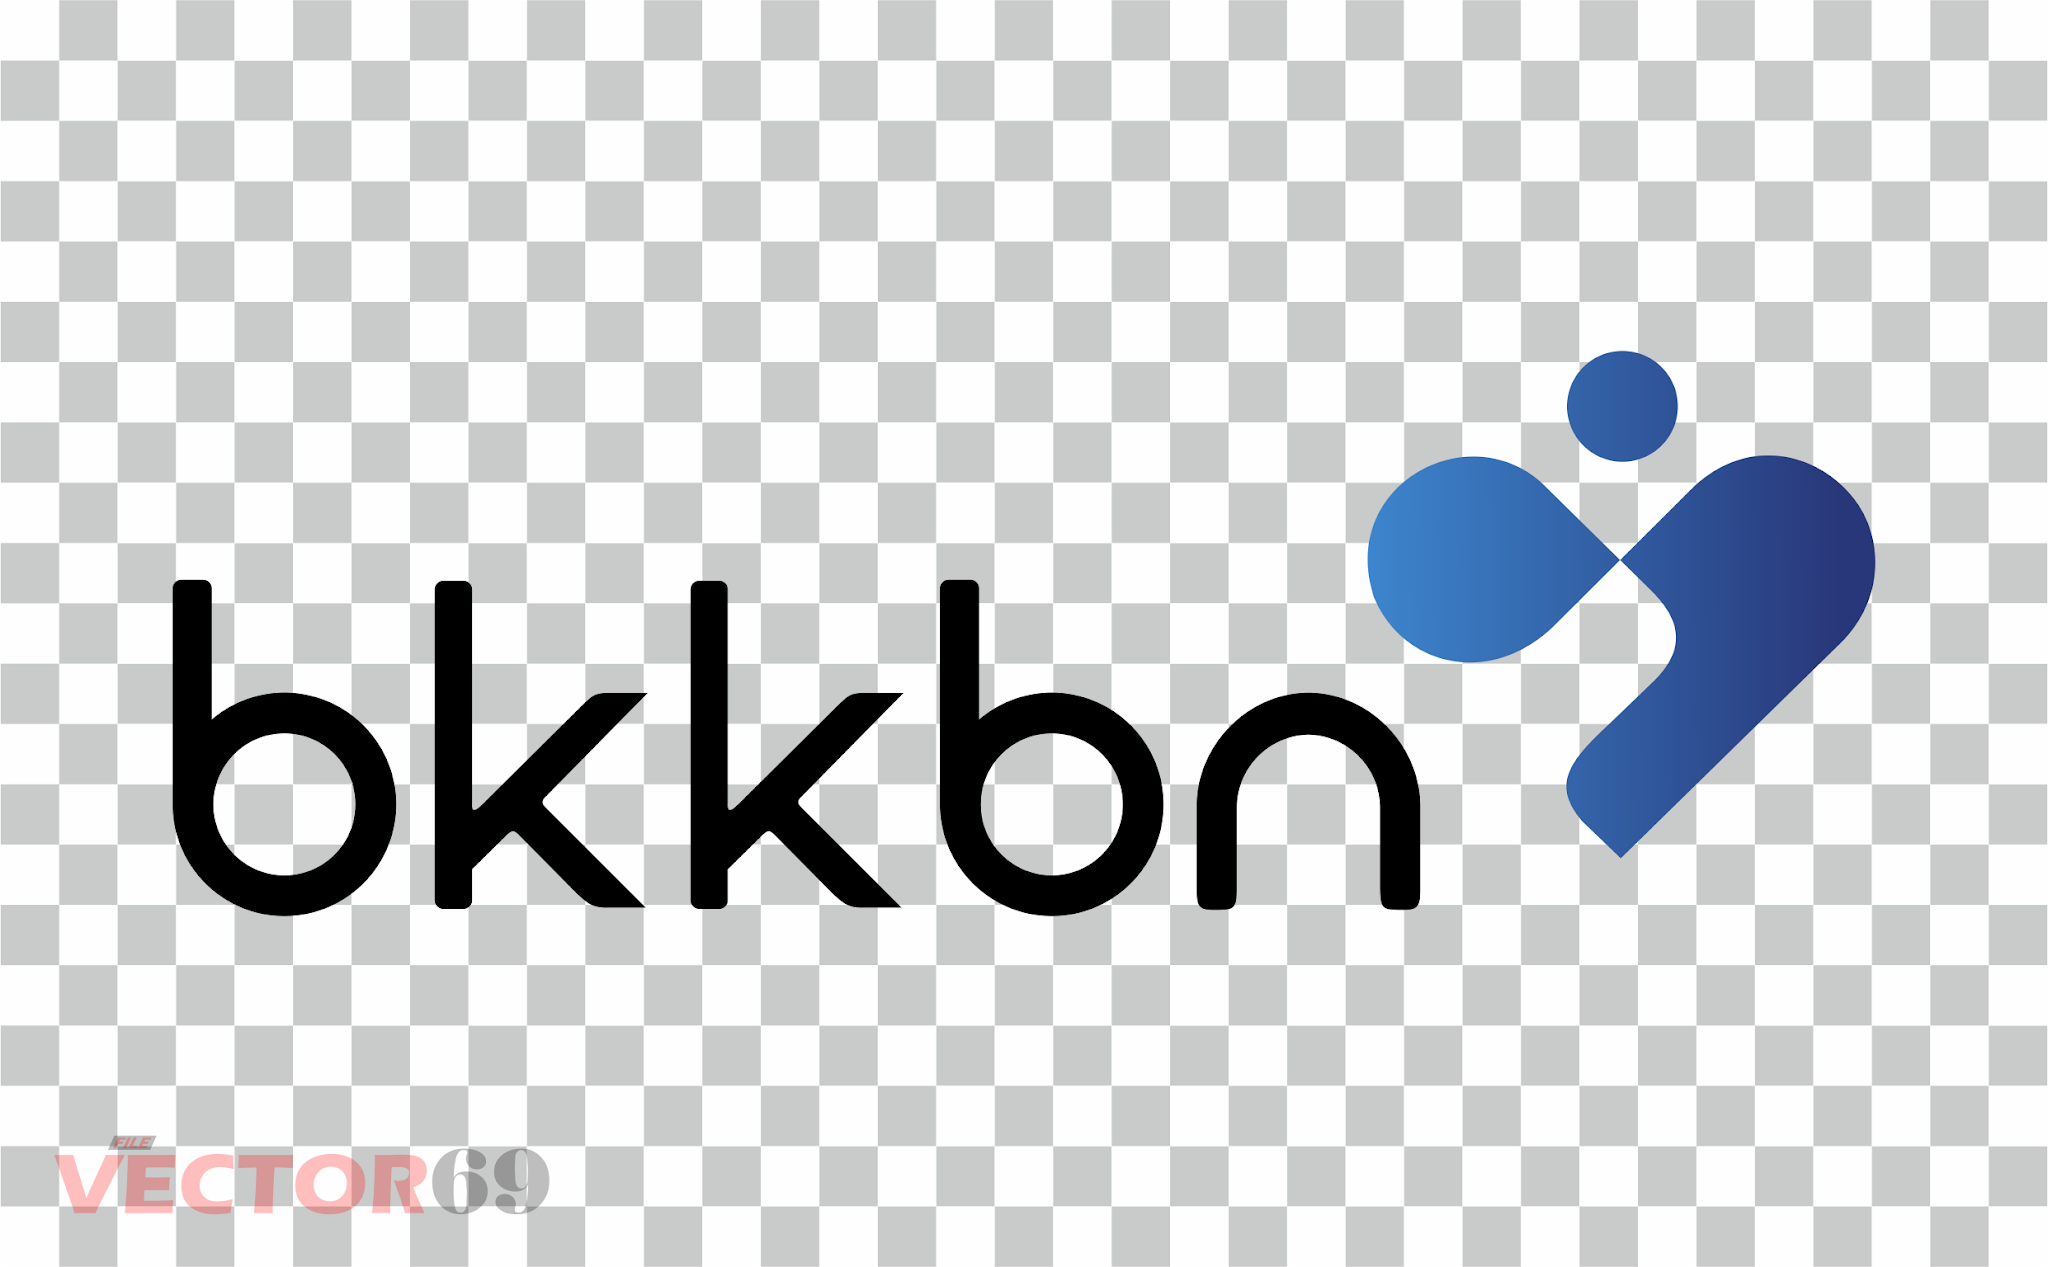 BKKBN (Badan Kependudukan dan Keluarga Berencana Nasional) Logo - Download Vector File PNG (Portable Network Graphics)